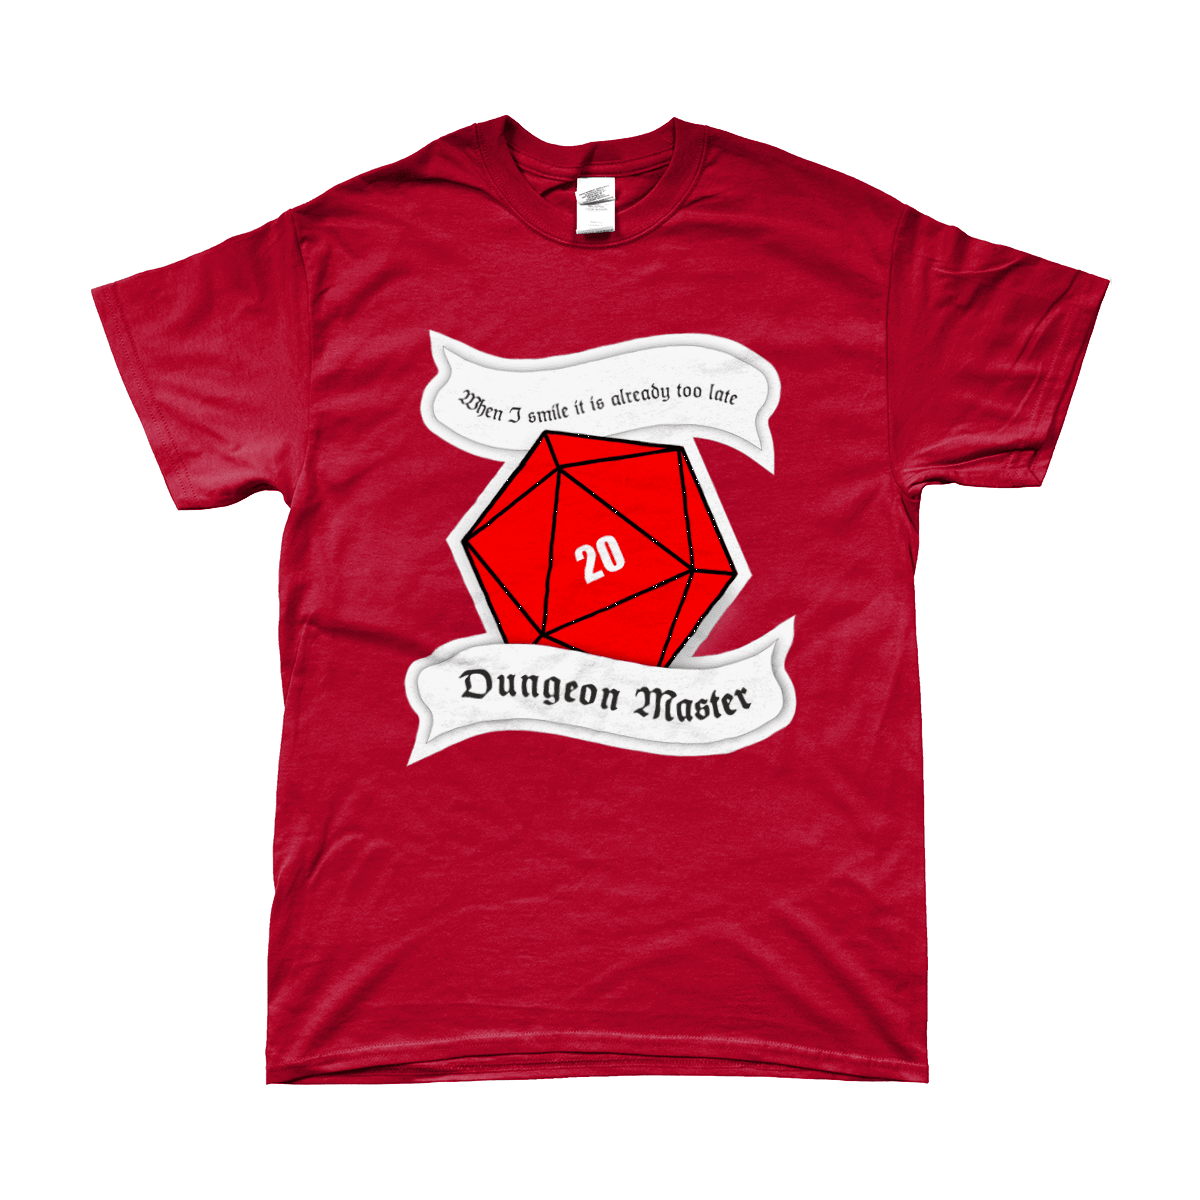 Red Berry Crafts Ltd:Dungeon Master Men's T-Shirt